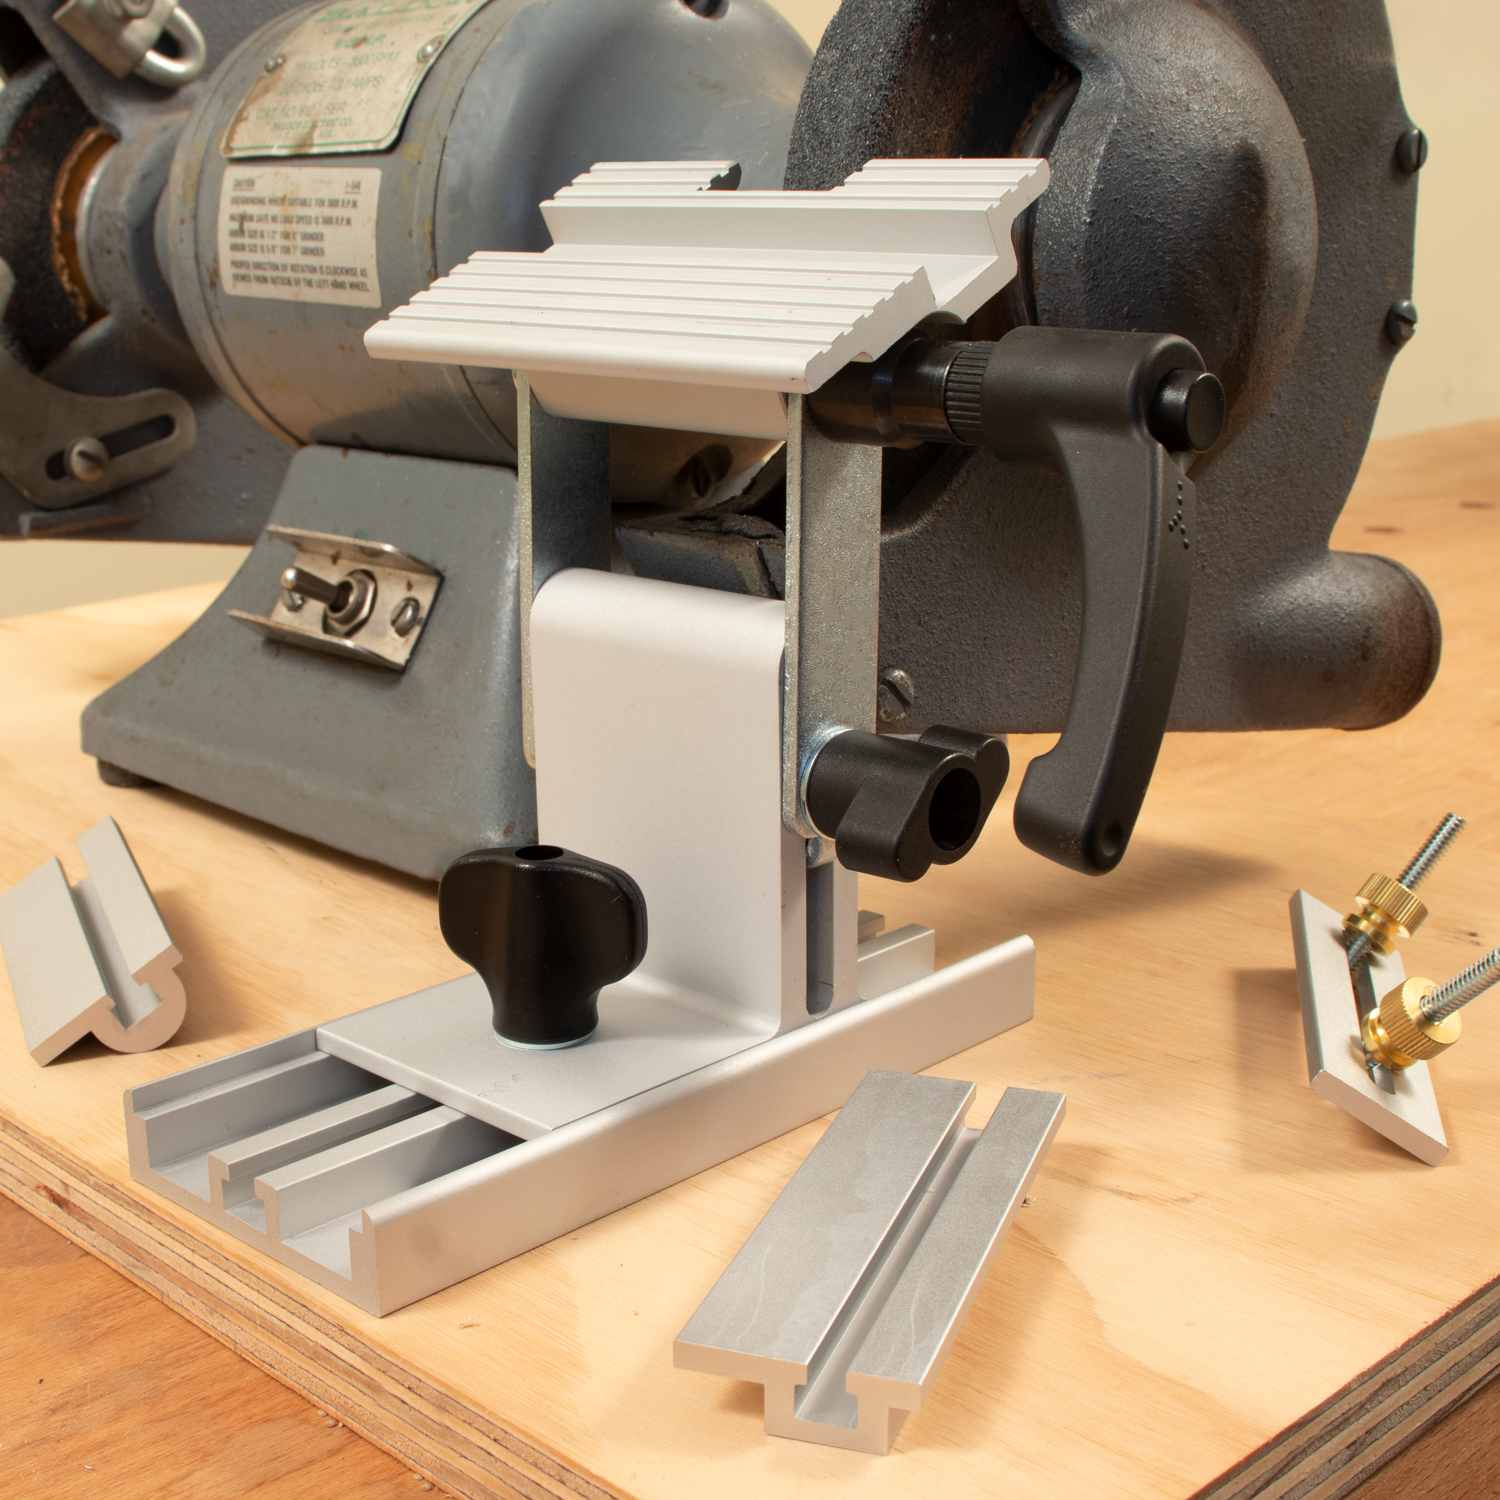 Pro Grind Sharpening System for Lathe Turning Tools, Chisels, Skews, Gouges, Bow